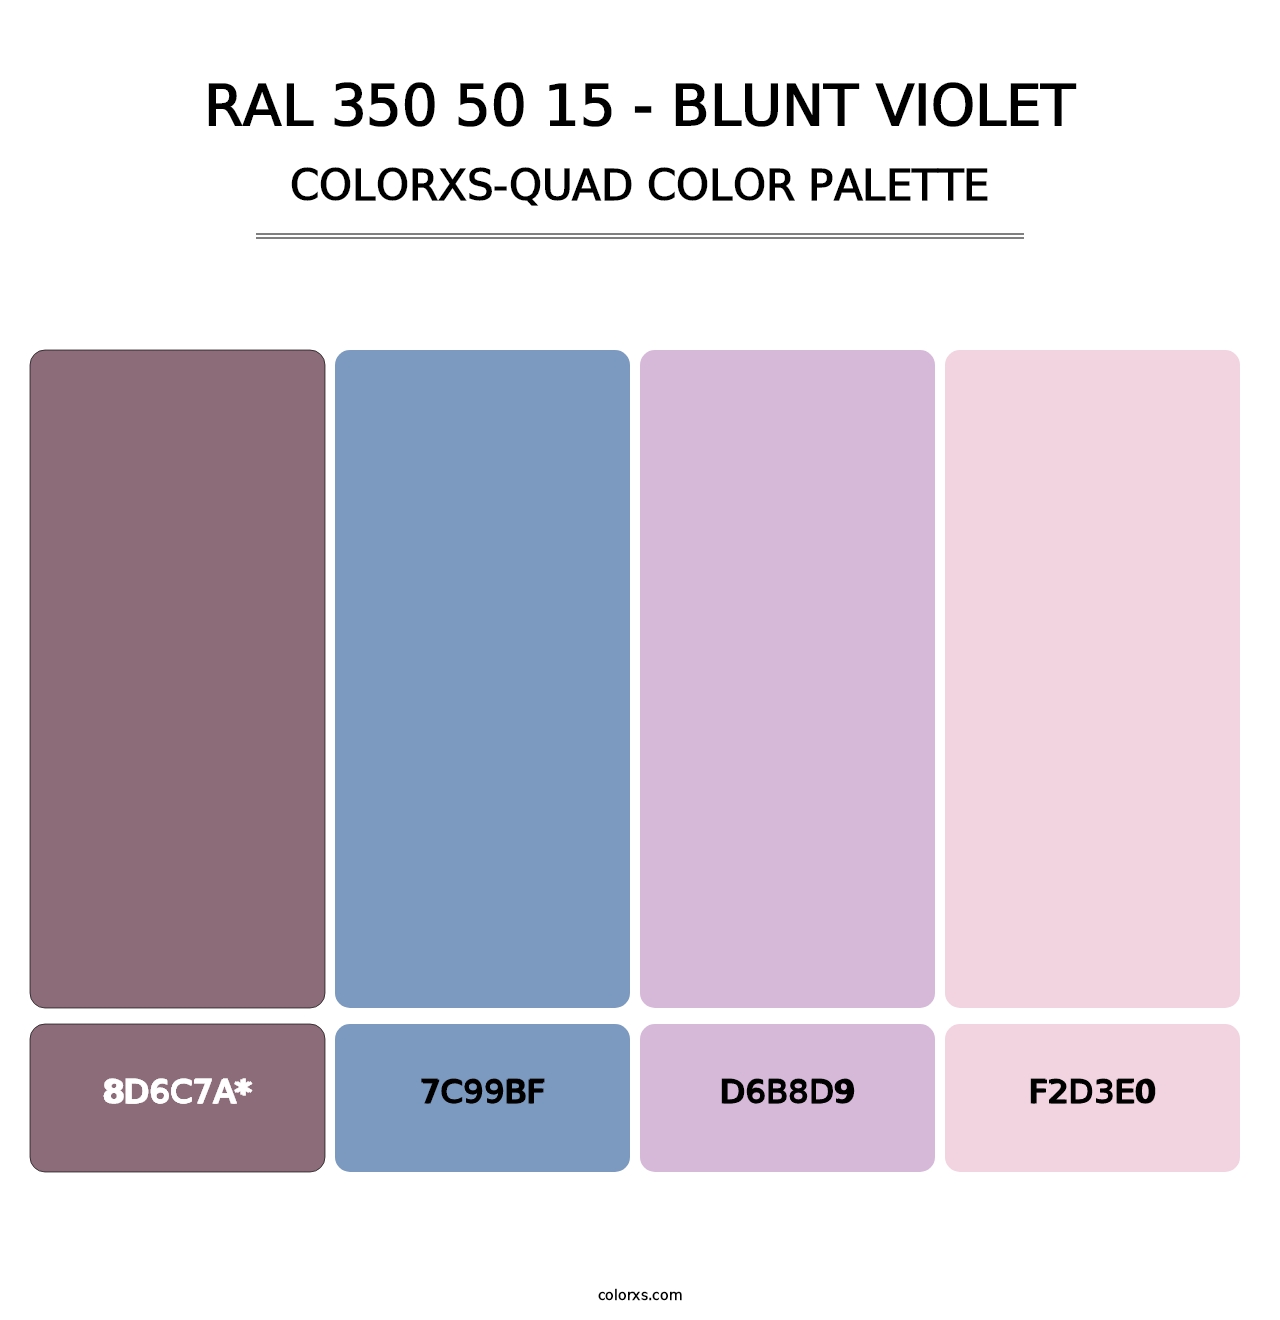 RAL 350 50 15 - Blunt Violet - Colorxs Quad Palette